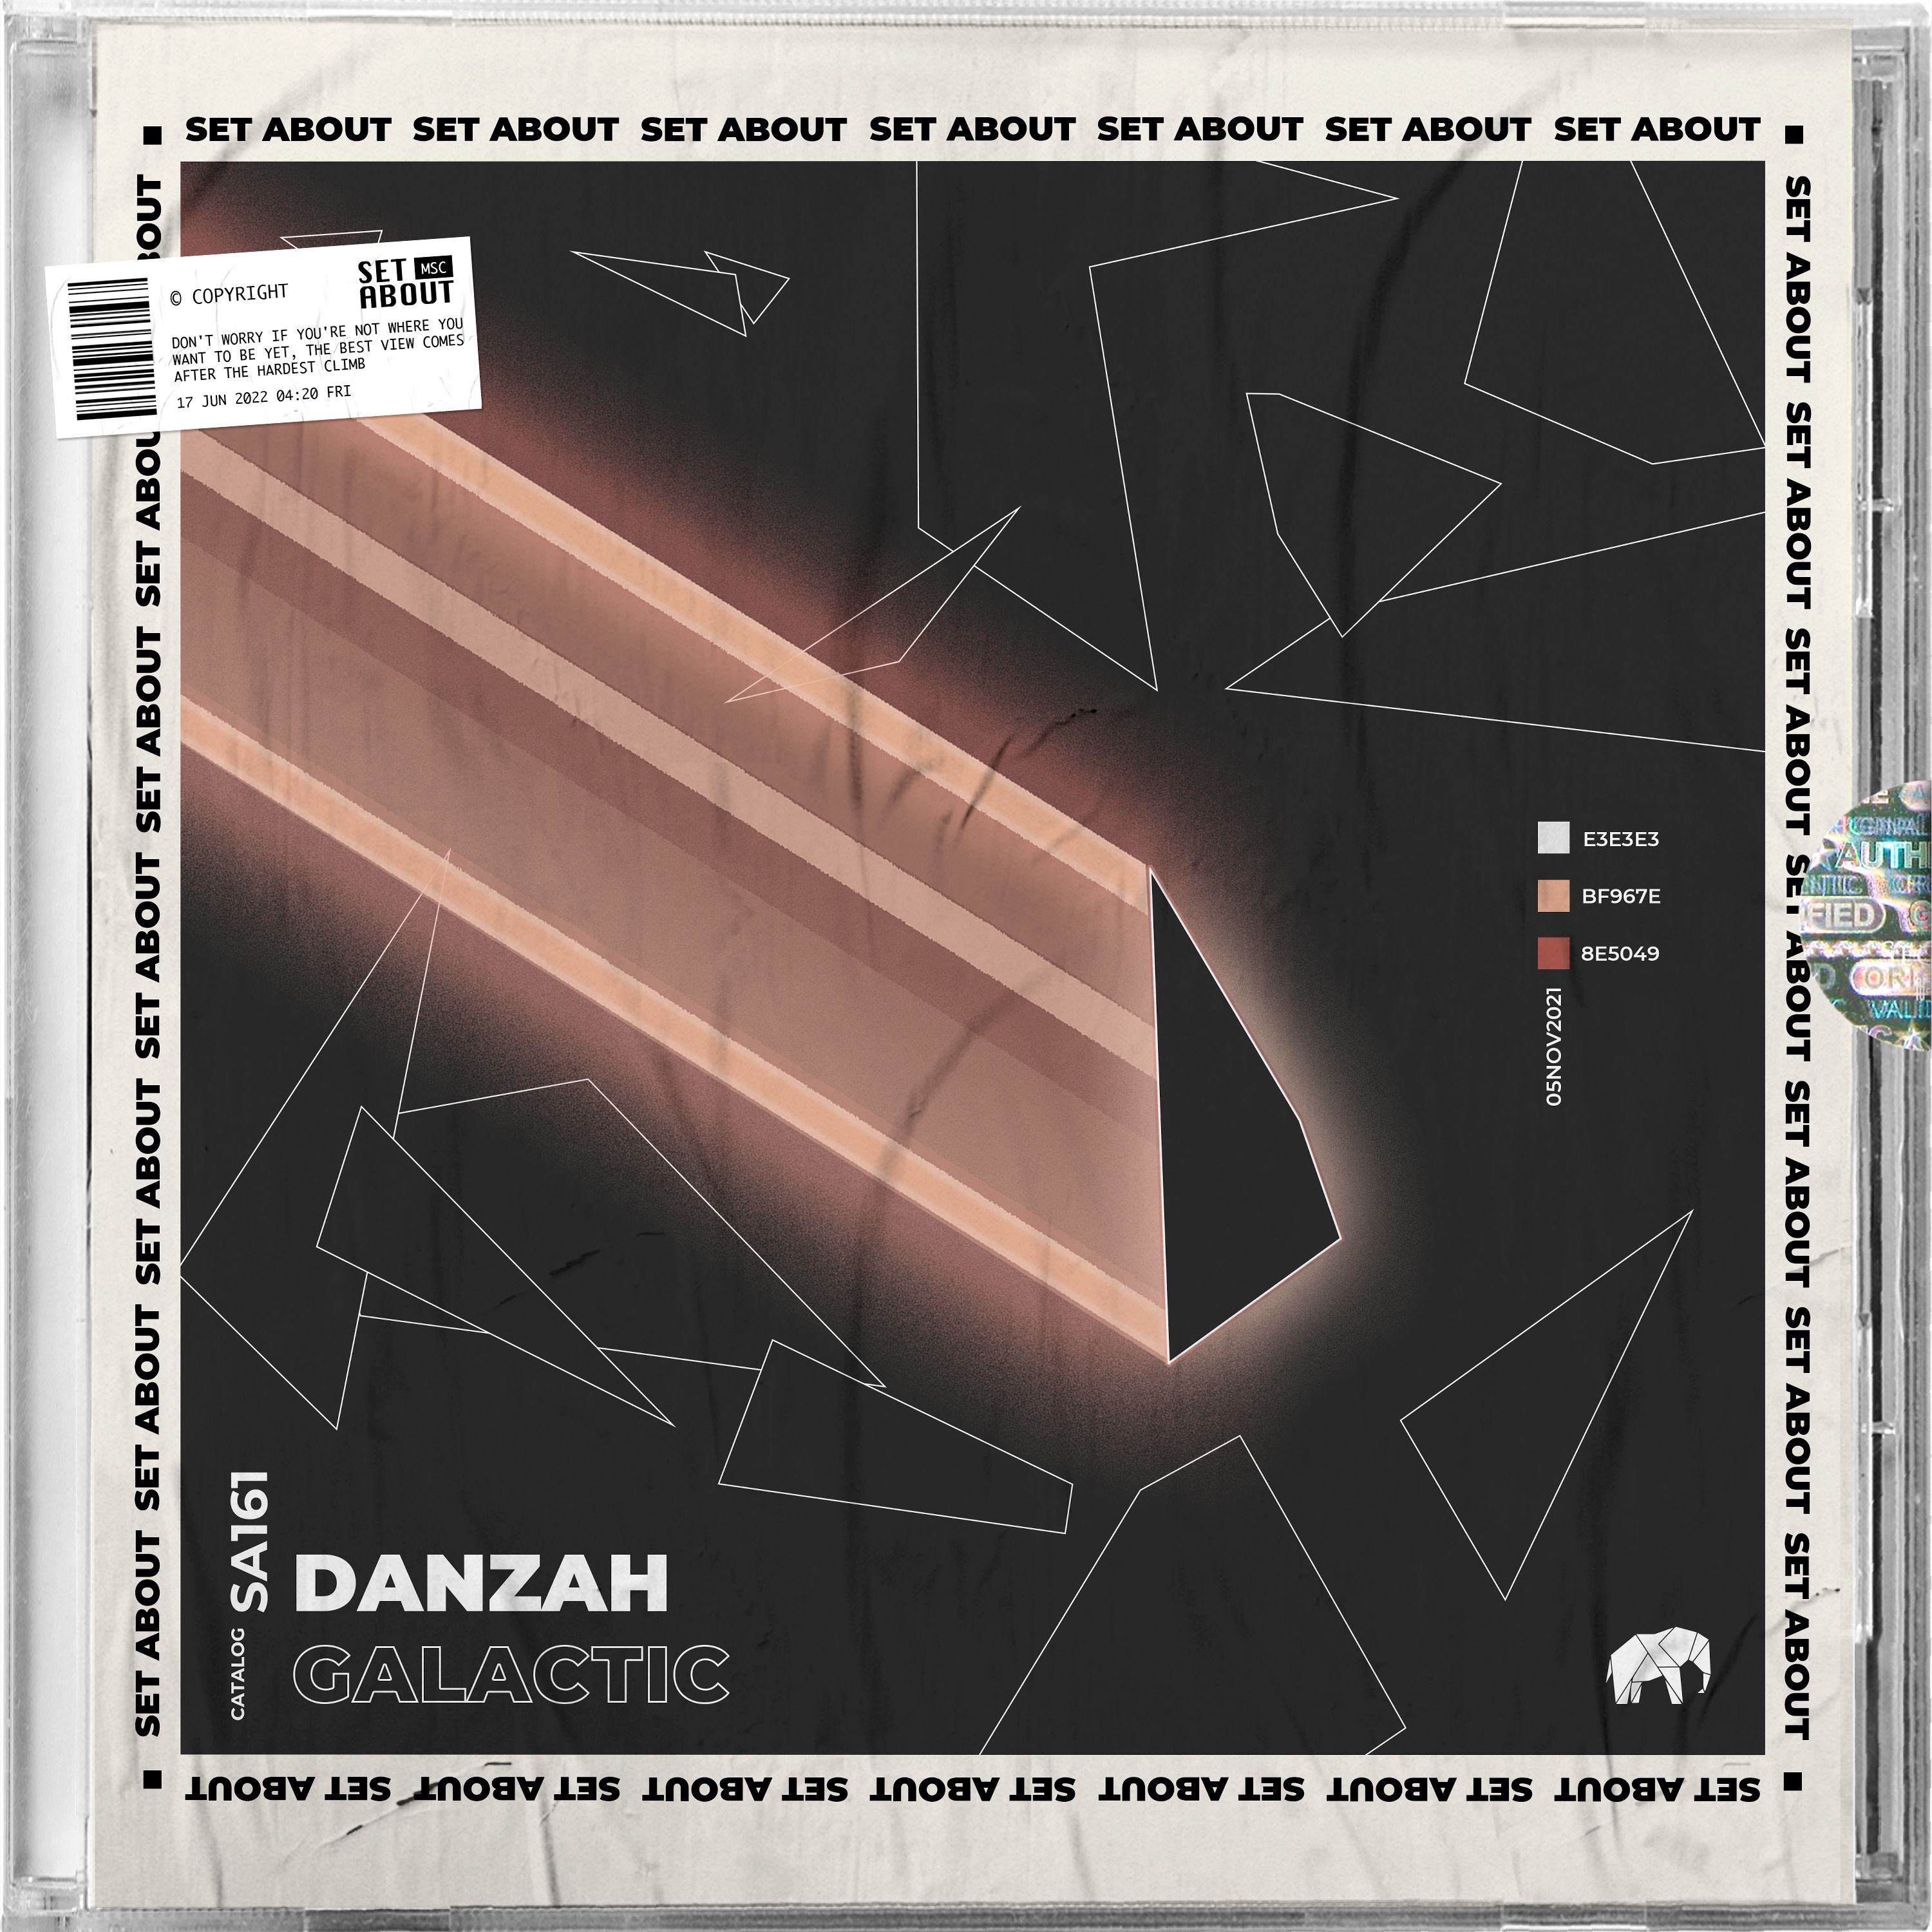 Download PREMIERE: DANZAH - Galactic (Original Mix) [Set About]